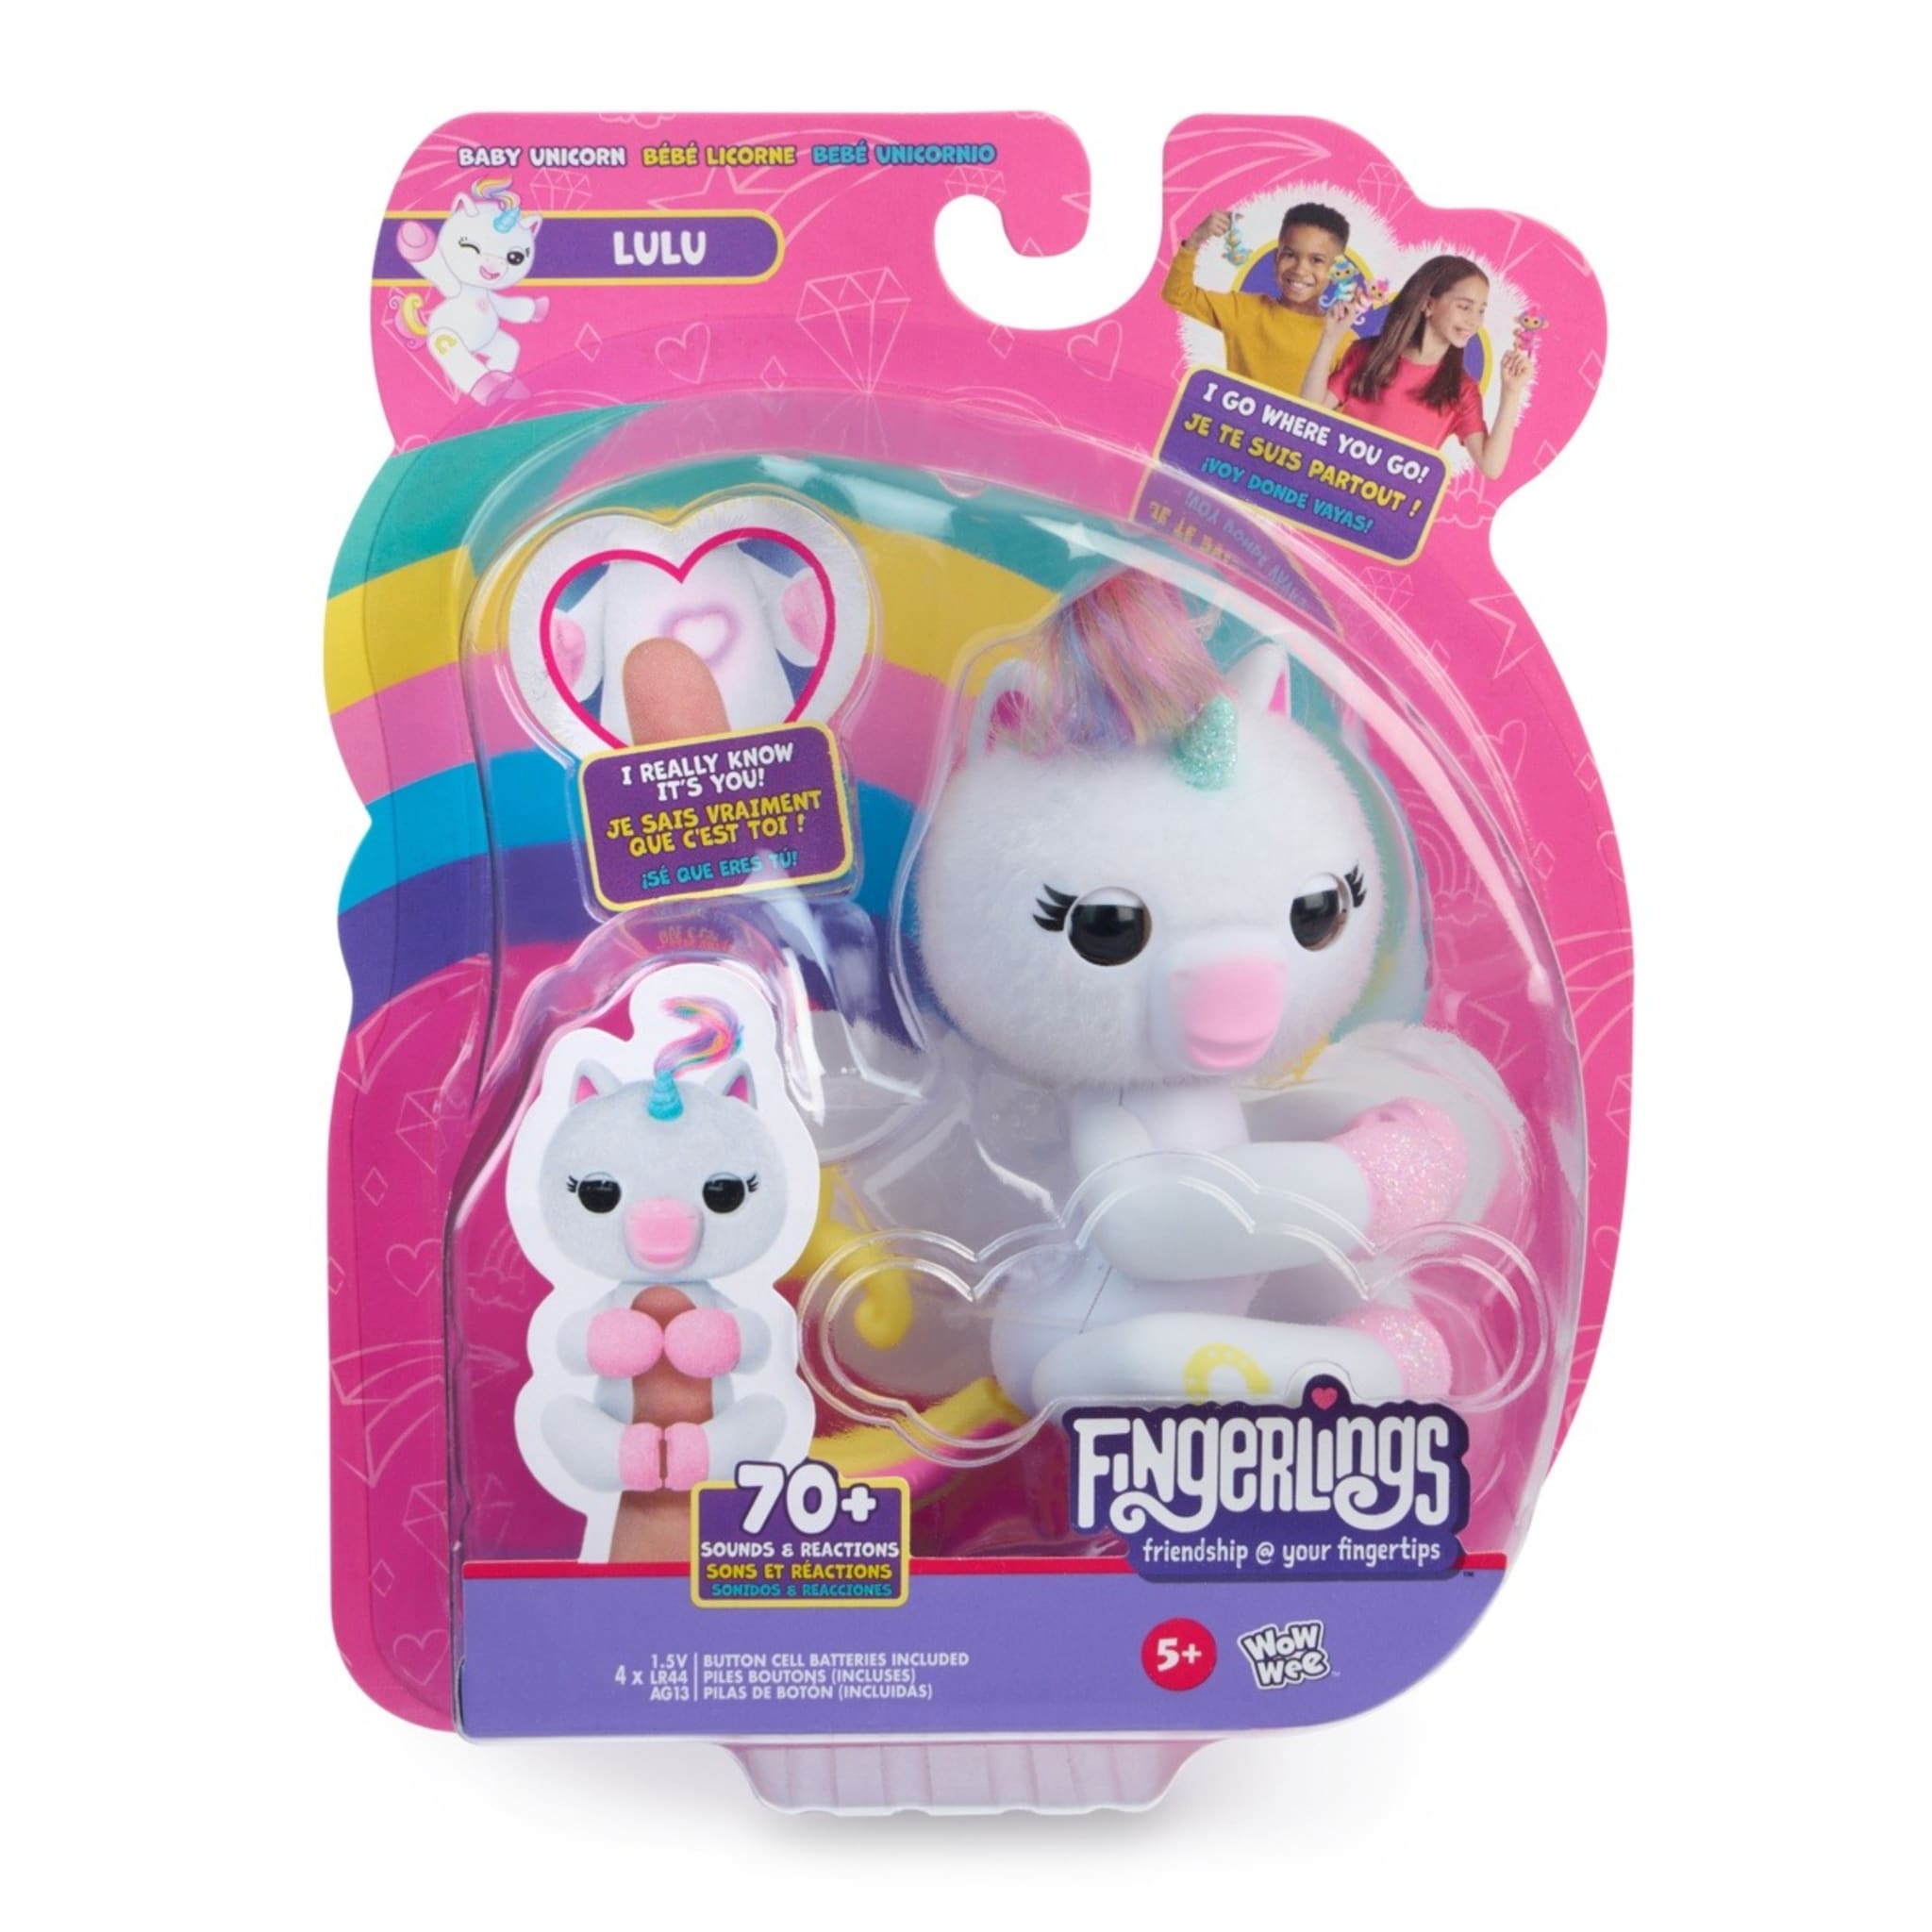 Fingerlings Lulu Baby Unicorn Interactive Toy - Kmart